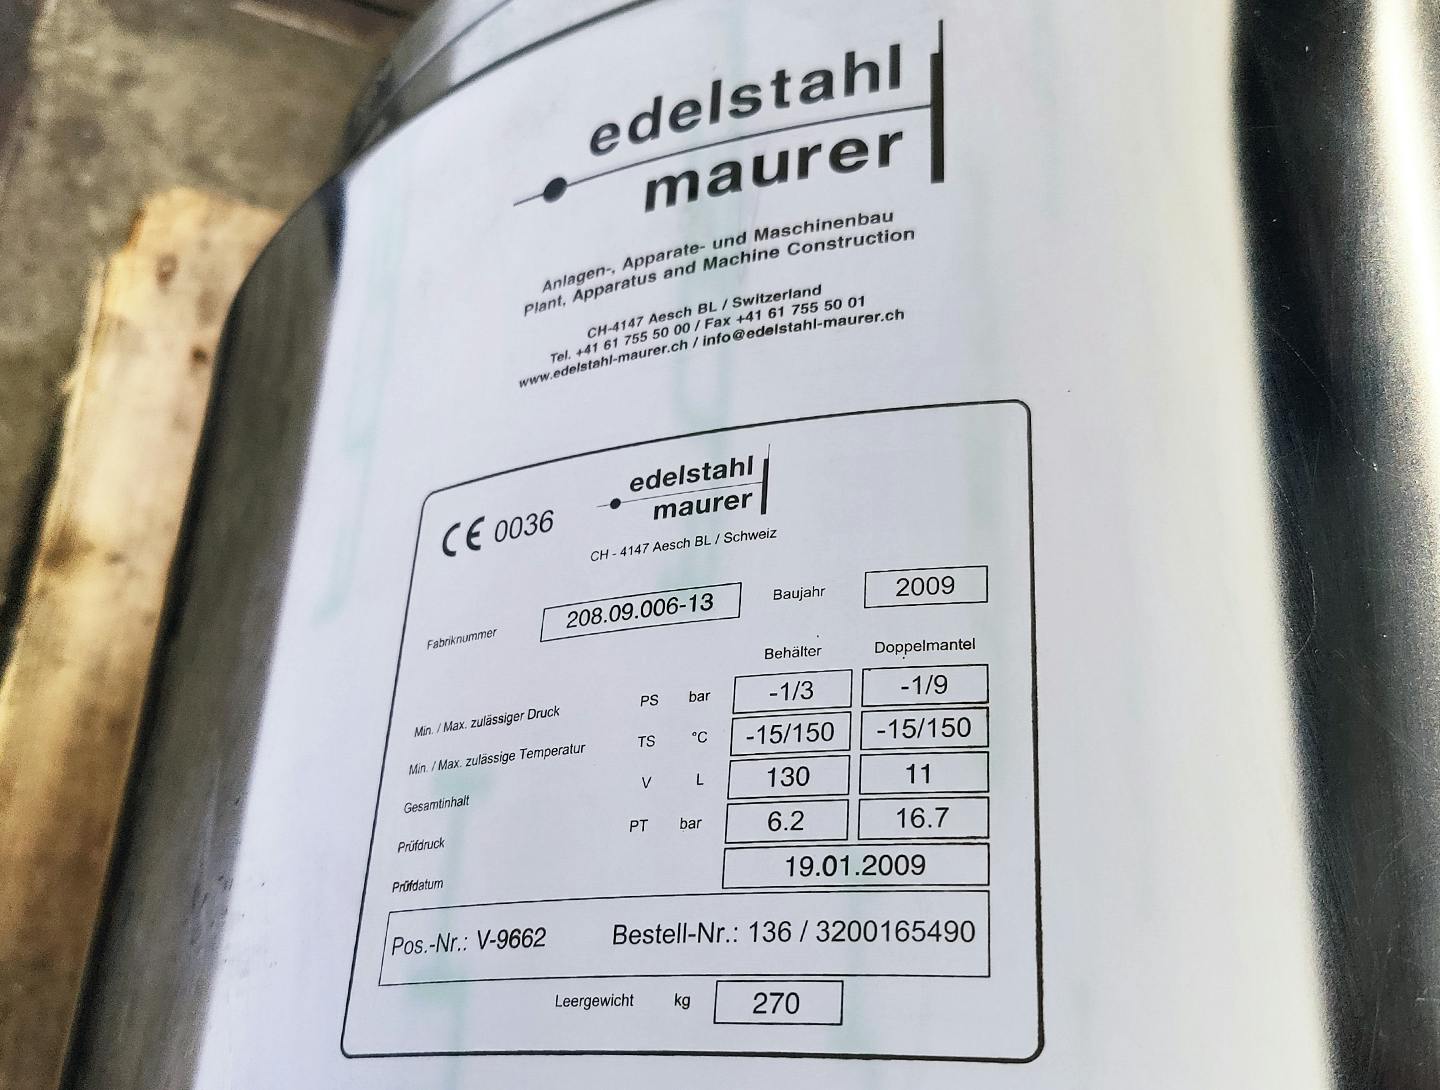 Edelstahl Maurer 130 Ltr. - Mirror-Polished Fraction Collector (Pharma Design) - Reactor de acero inoxidable - image 10